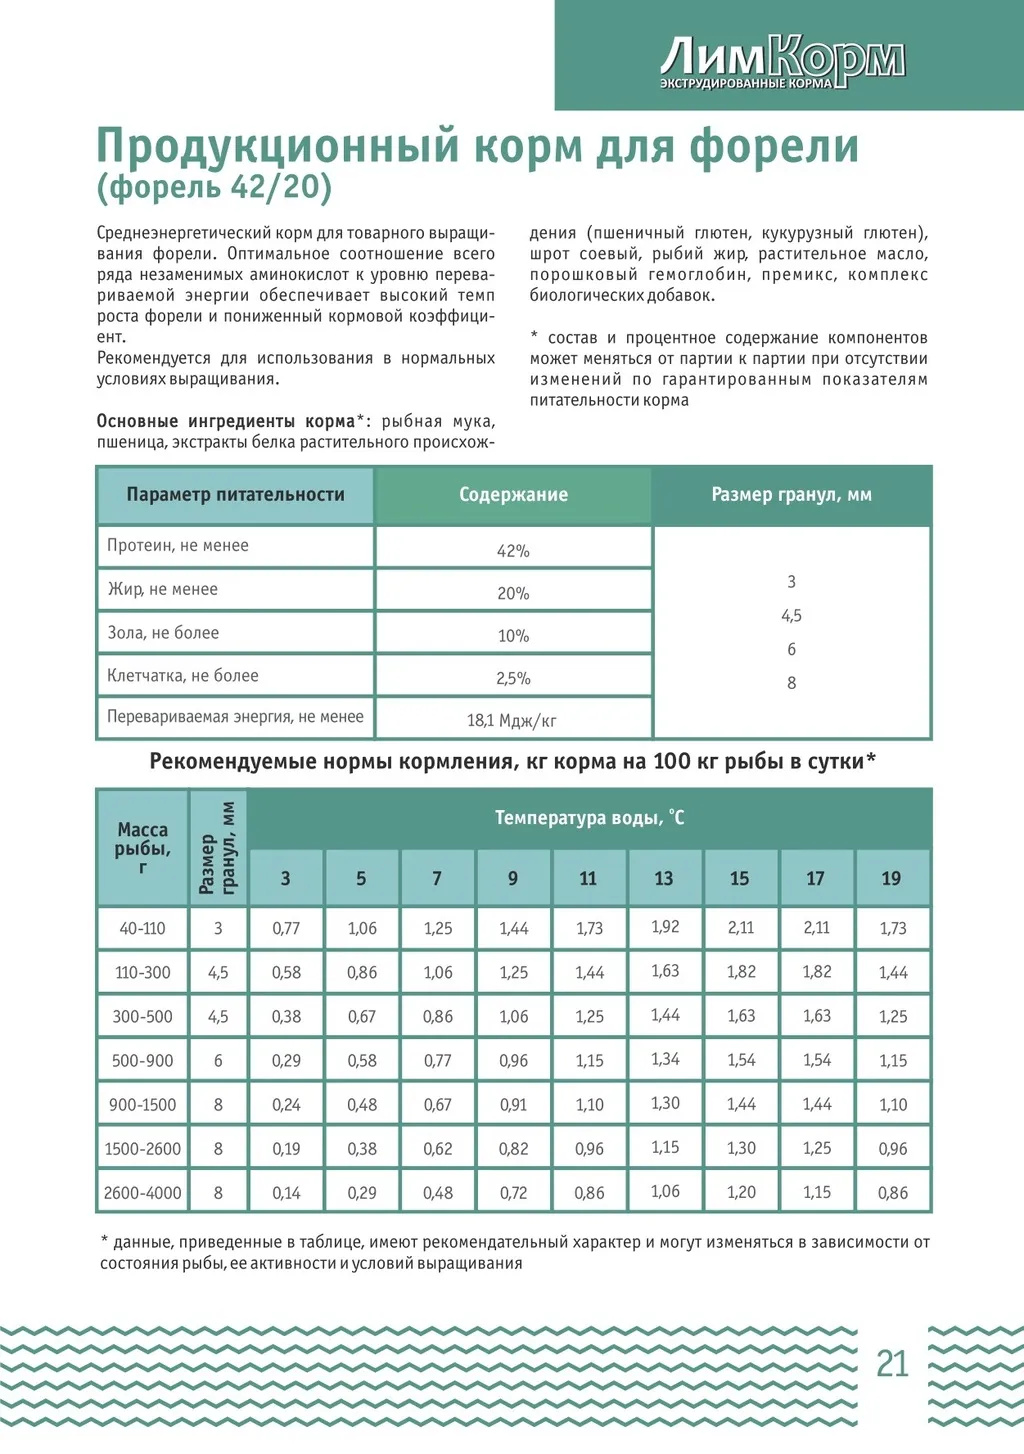 корма для форели (ЛимКорм) в Москве и Московской области